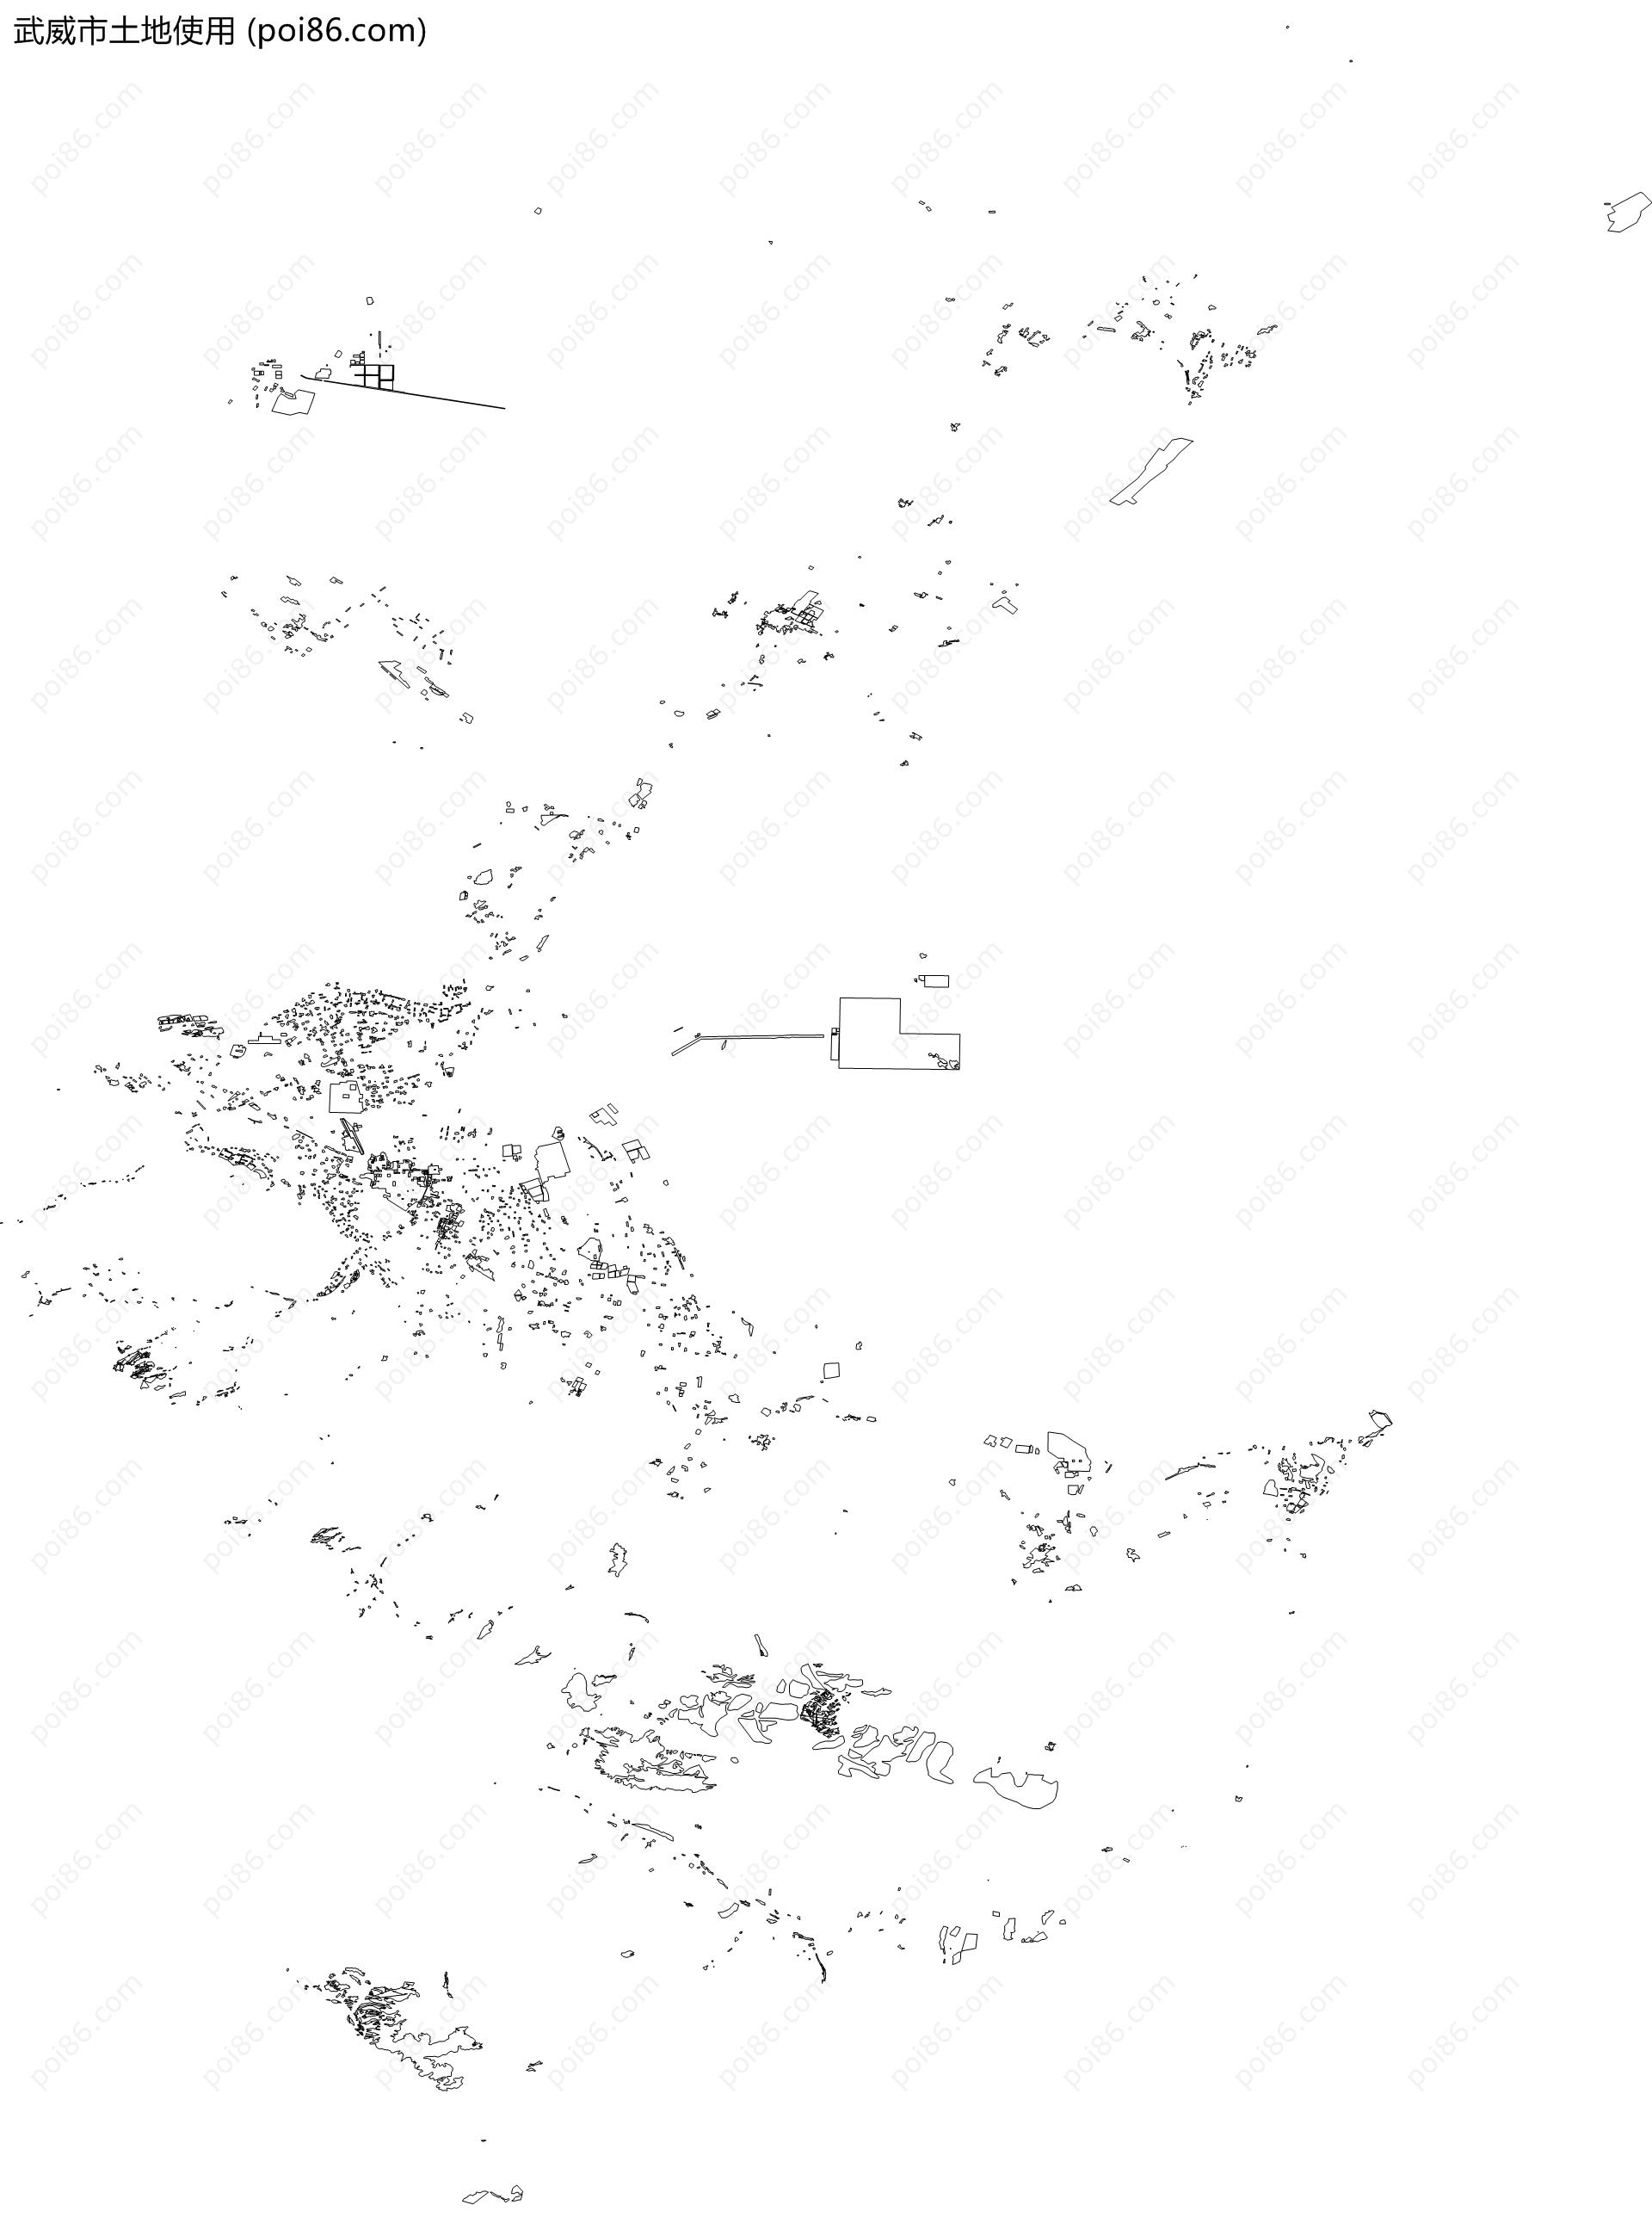 武威市土地使用地图